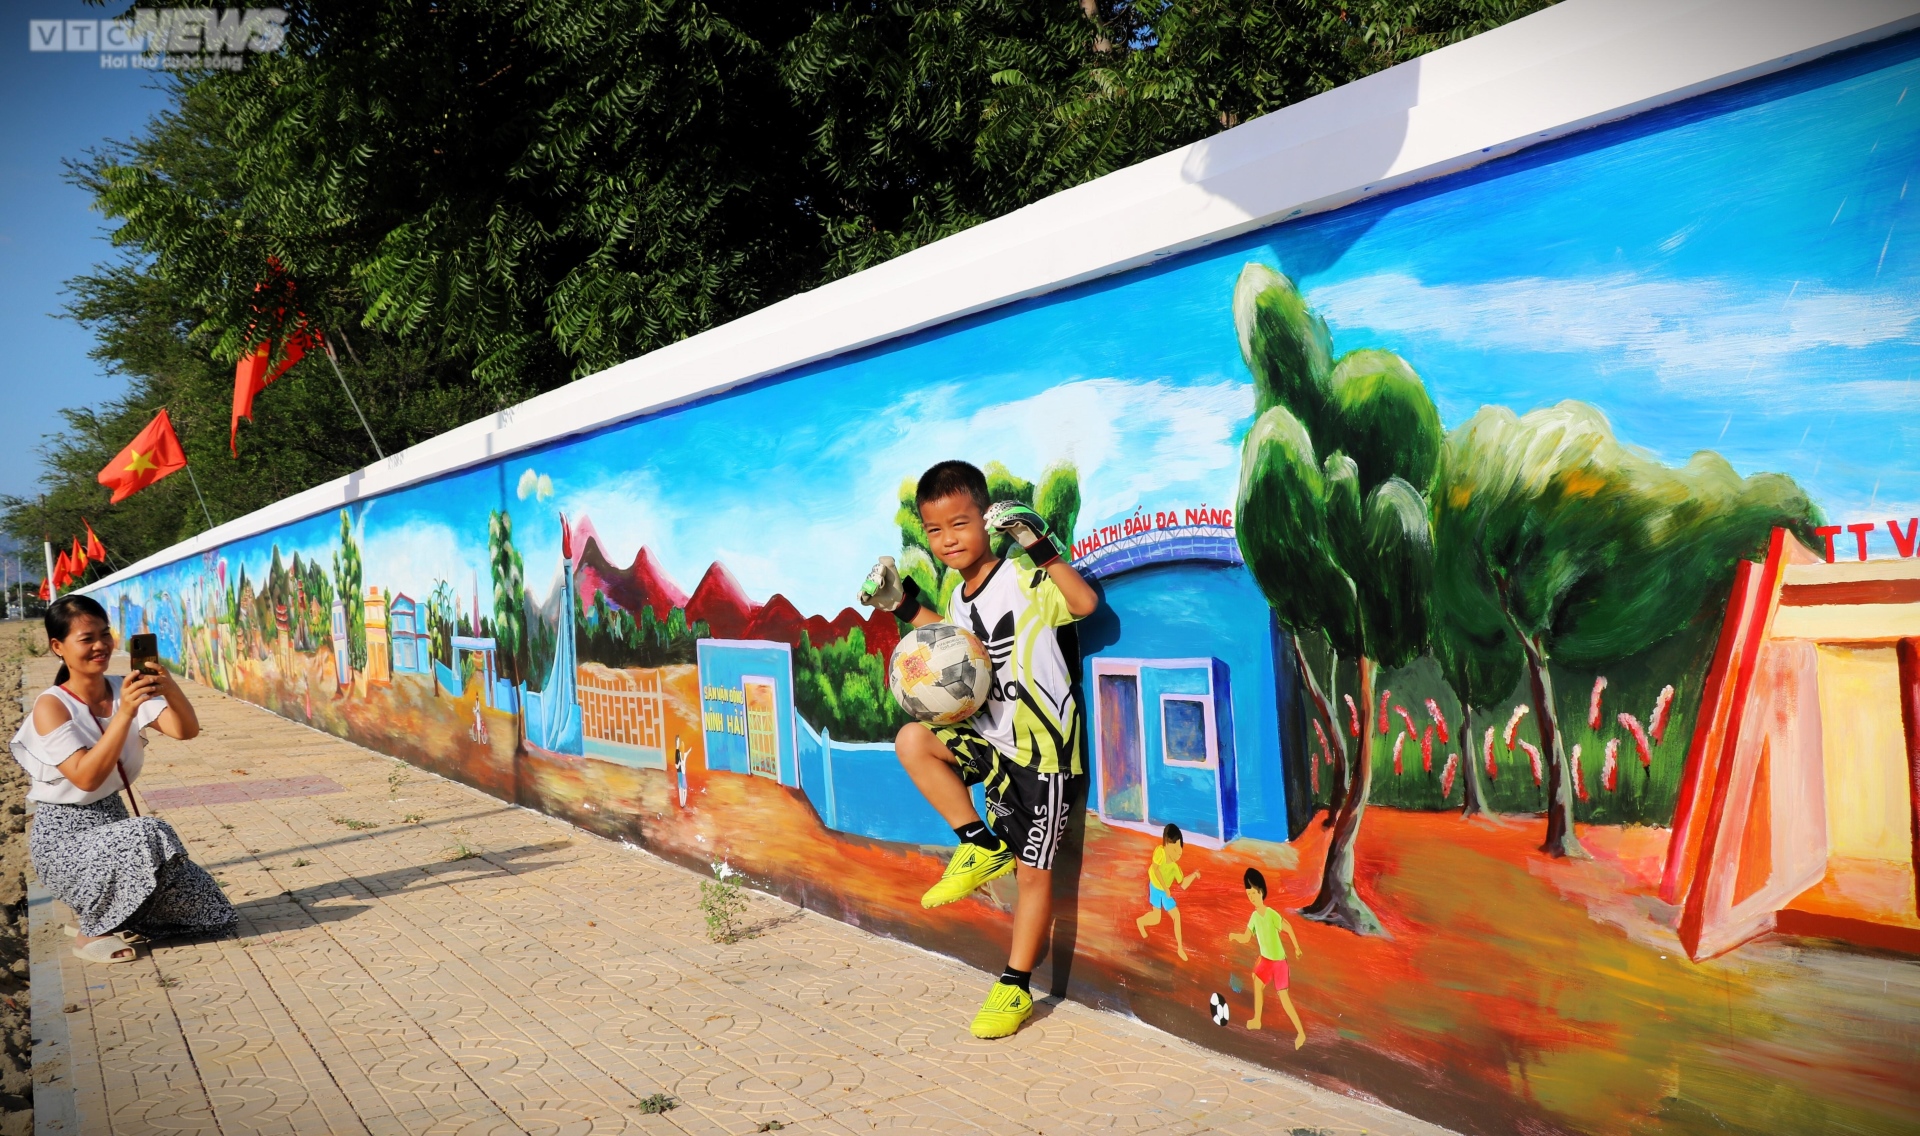 Chiêm ngưỡng bức tường tranh bích họa ven biển Ninh Thuận xác lập kỷ lục Việt Nam - Ảnh 11.